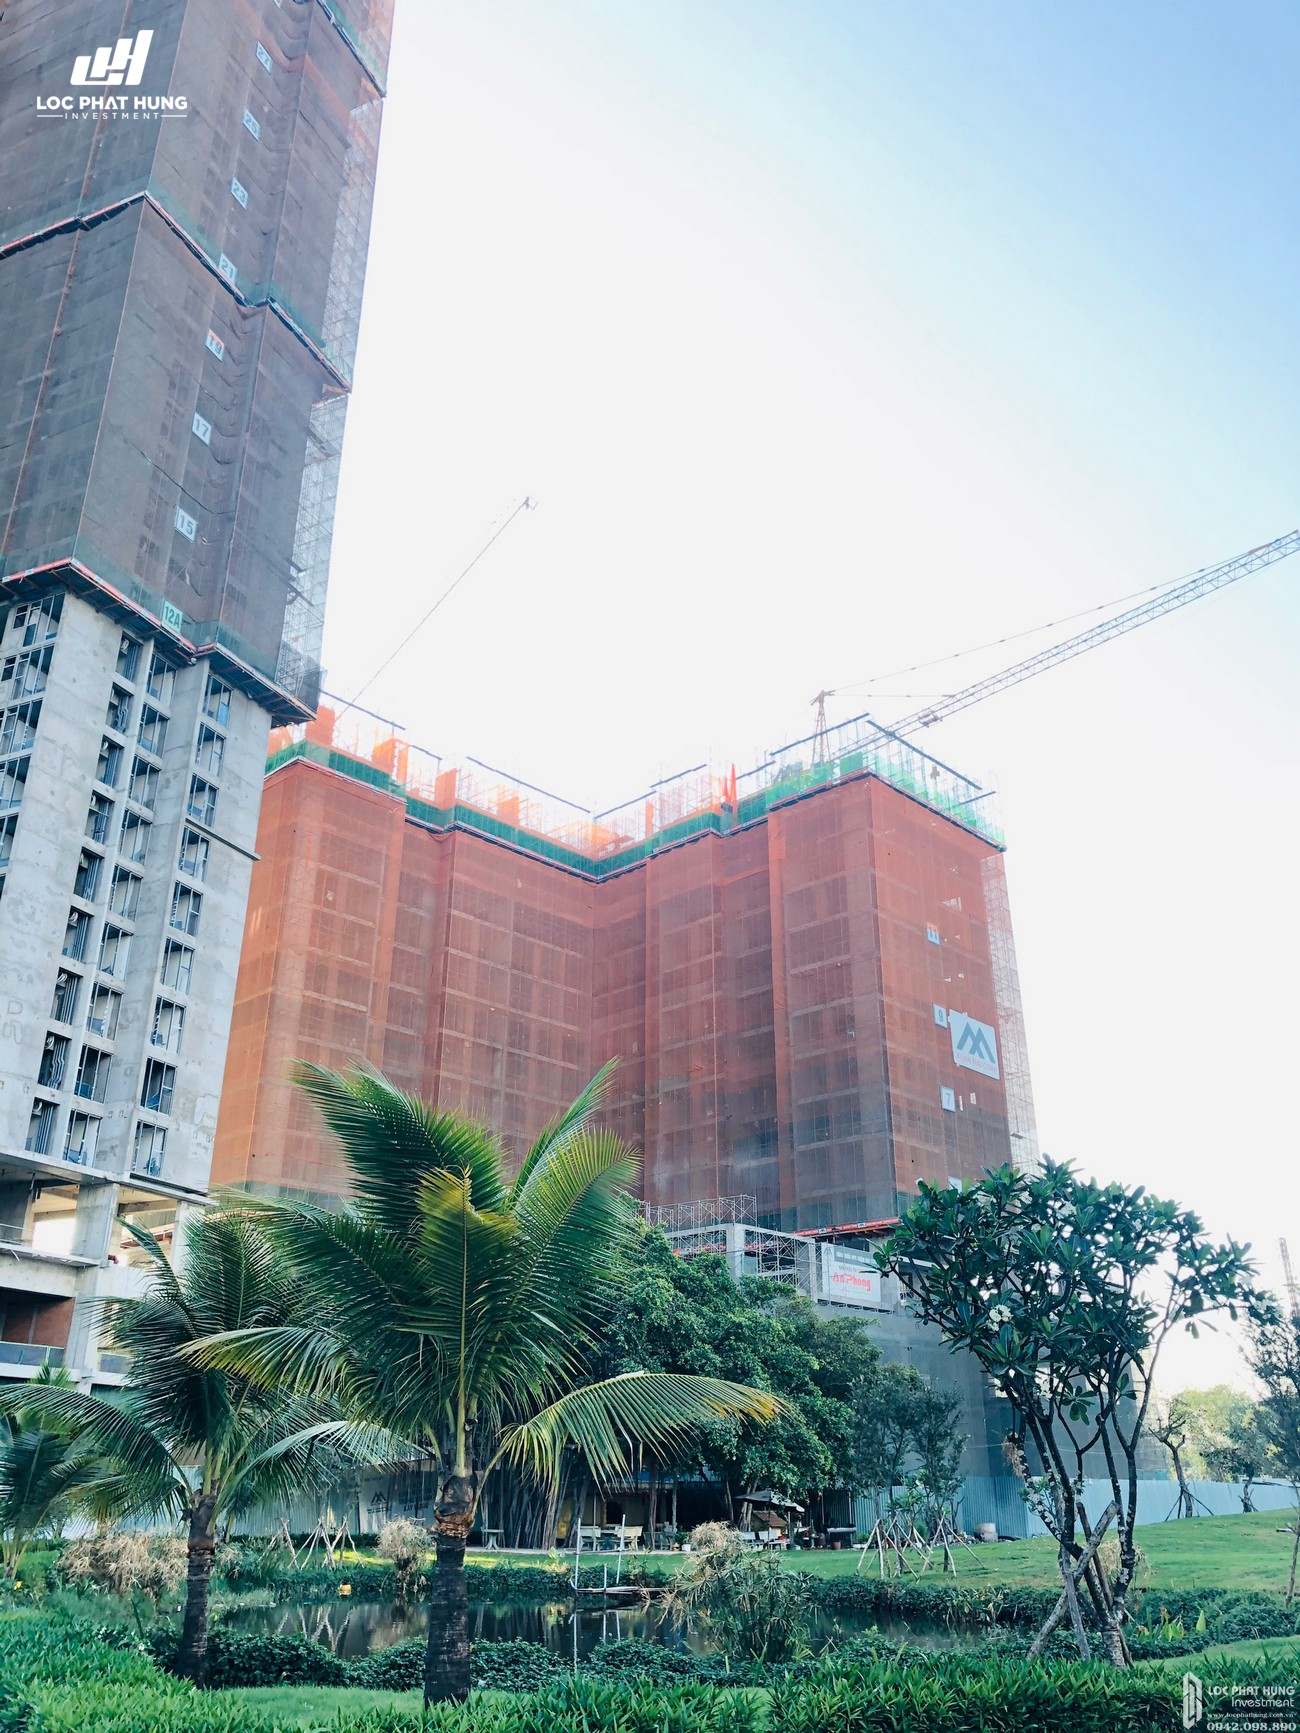 Tiến độ xây dựng dự án căn hộ Eco green Sài Gòn 14/03/2020